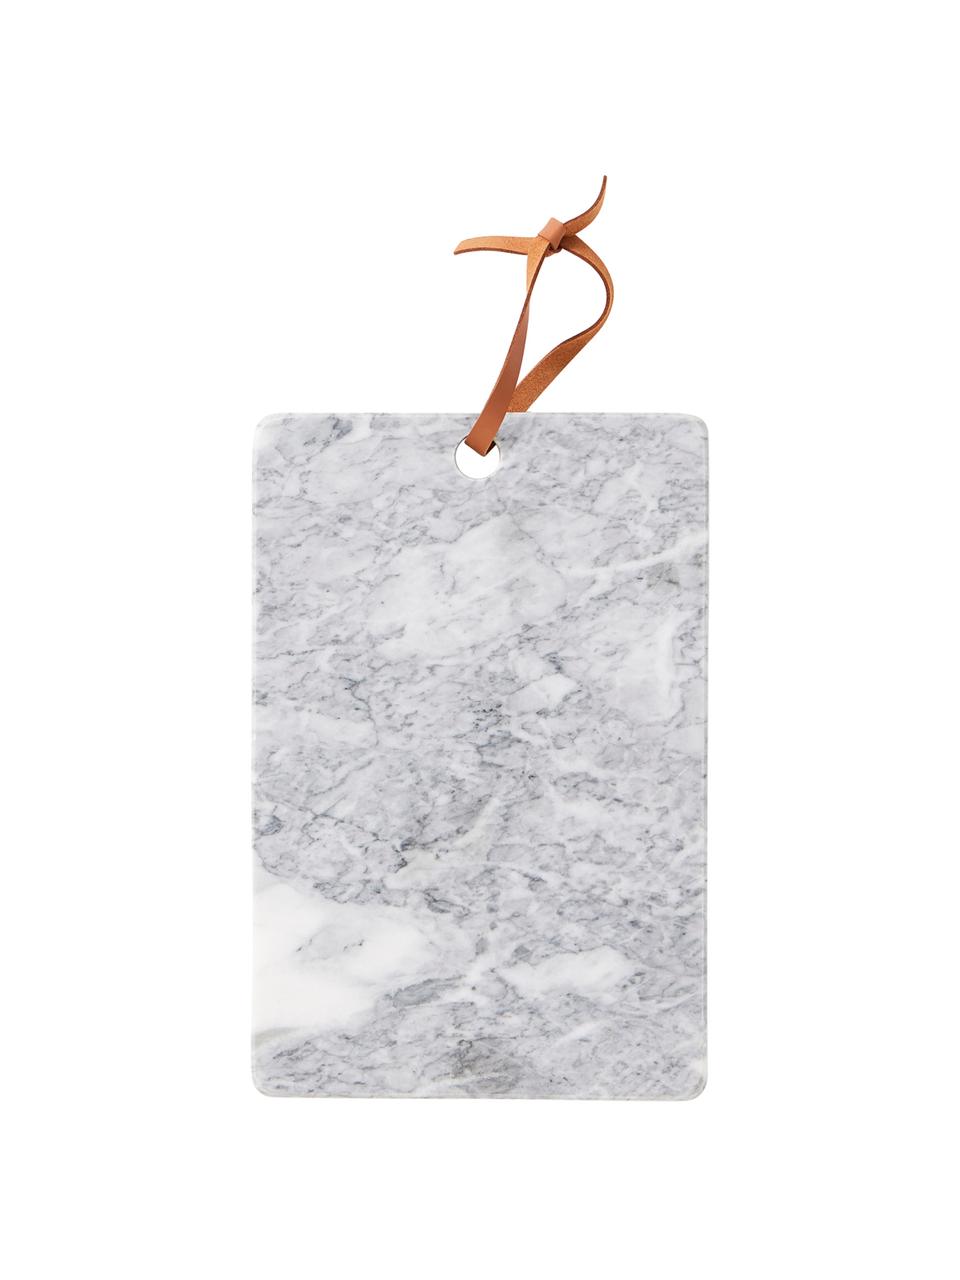 Tagliere in marmo Bardi, Grigio chiaro marmorizzato, Larg. 30 x Prof. 20 cm